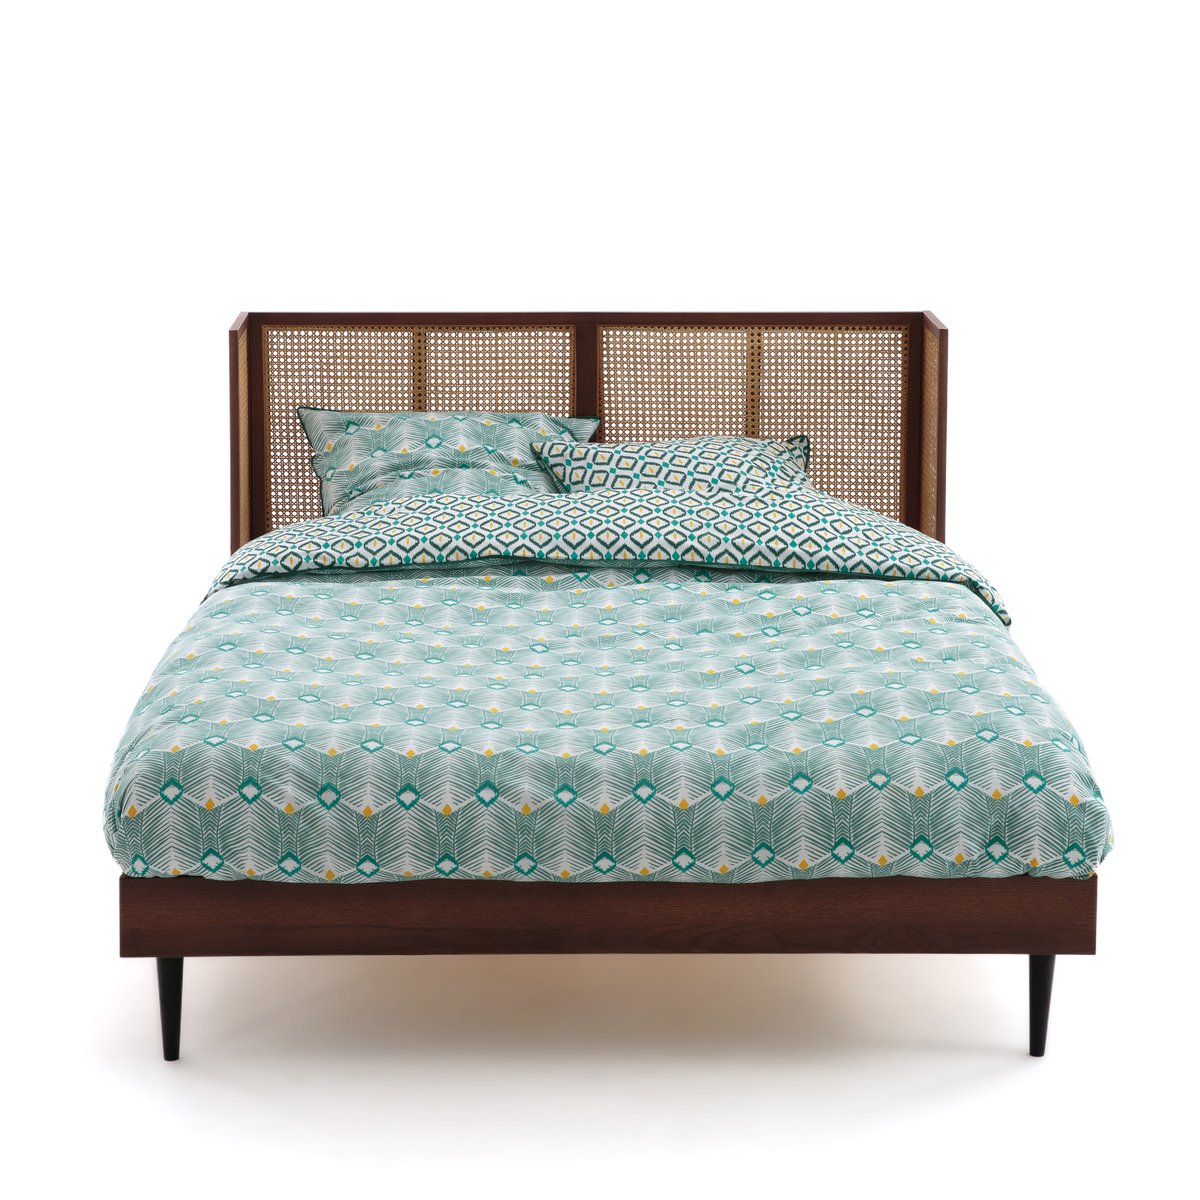 Кровать LaRedoute Винтажная из плетеного ротанга с сеткой NOYA 160 x 200 см каштановый, размер 160 x 200 см - фото 2